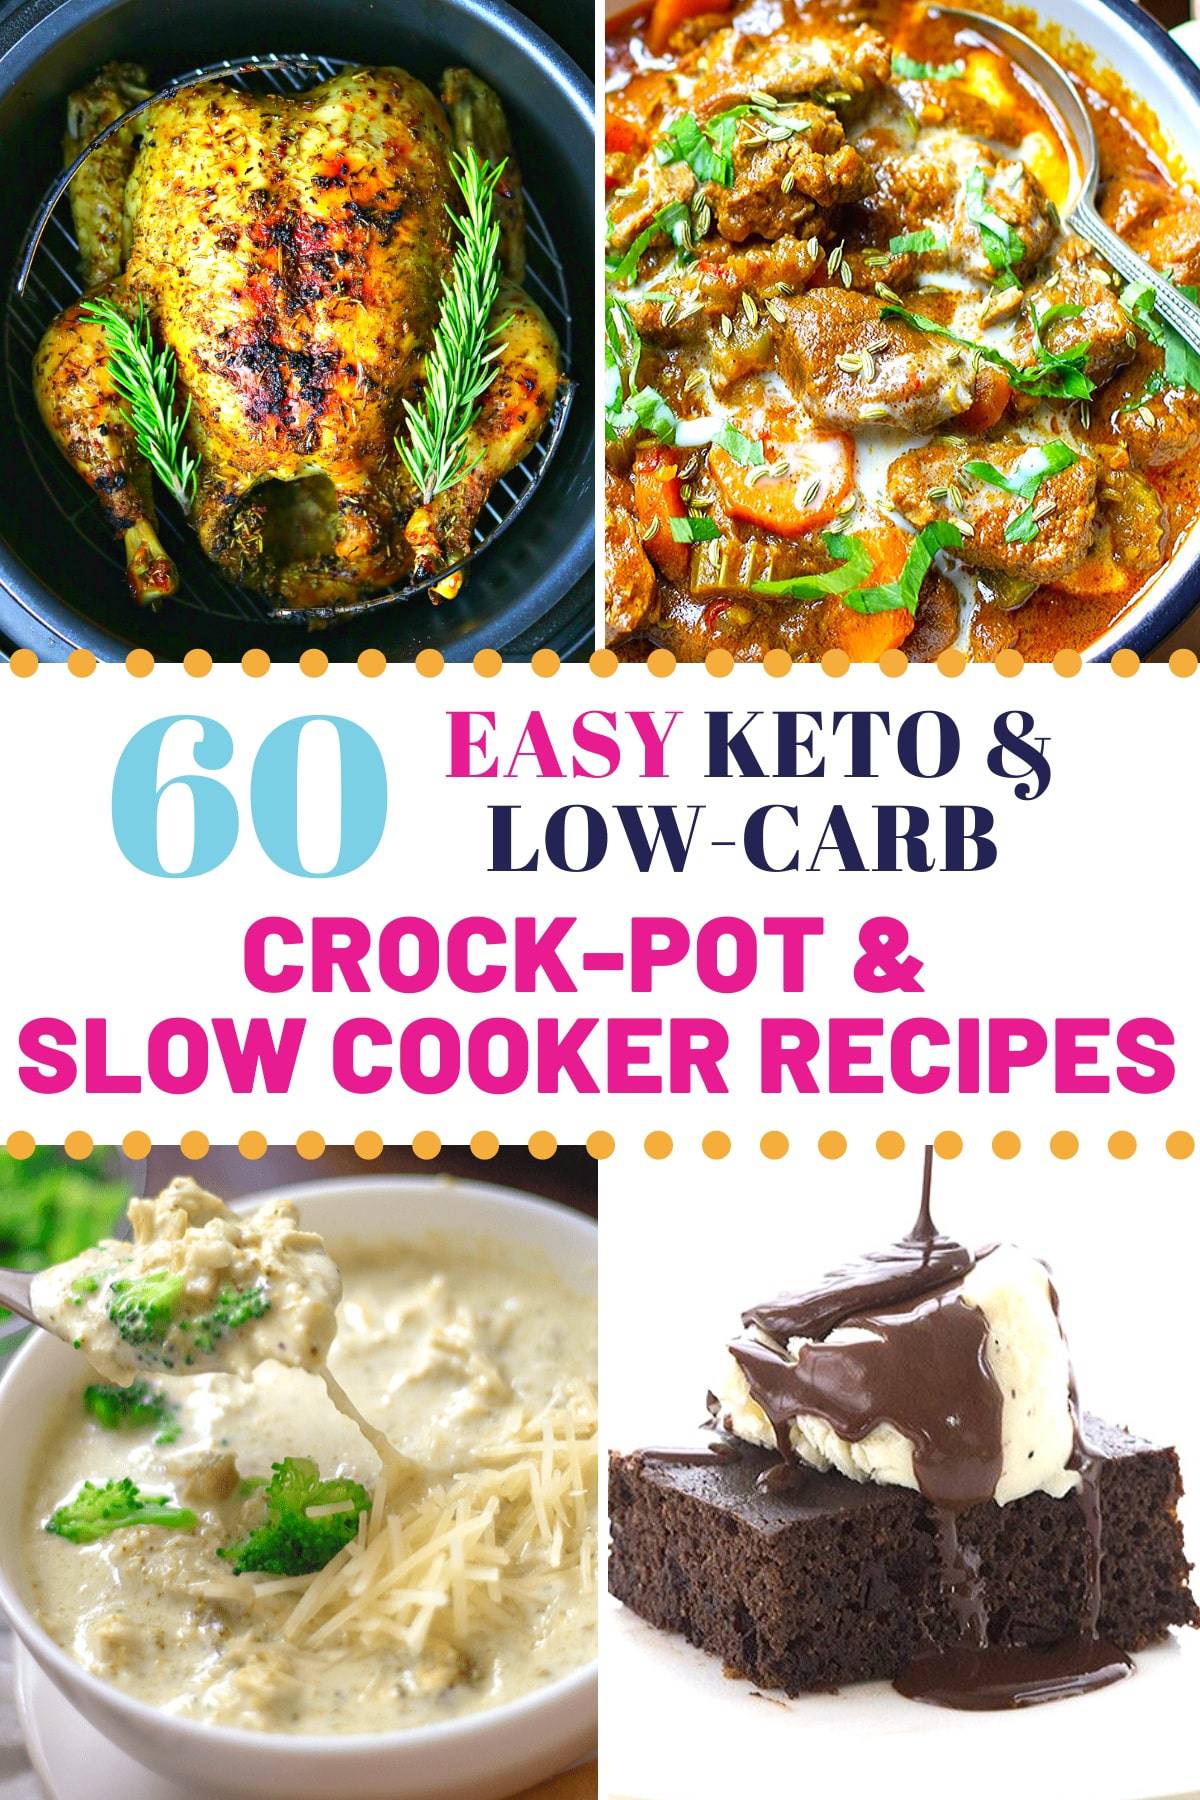 Buy Keto Slow Cooker Voucher Code 80 Off